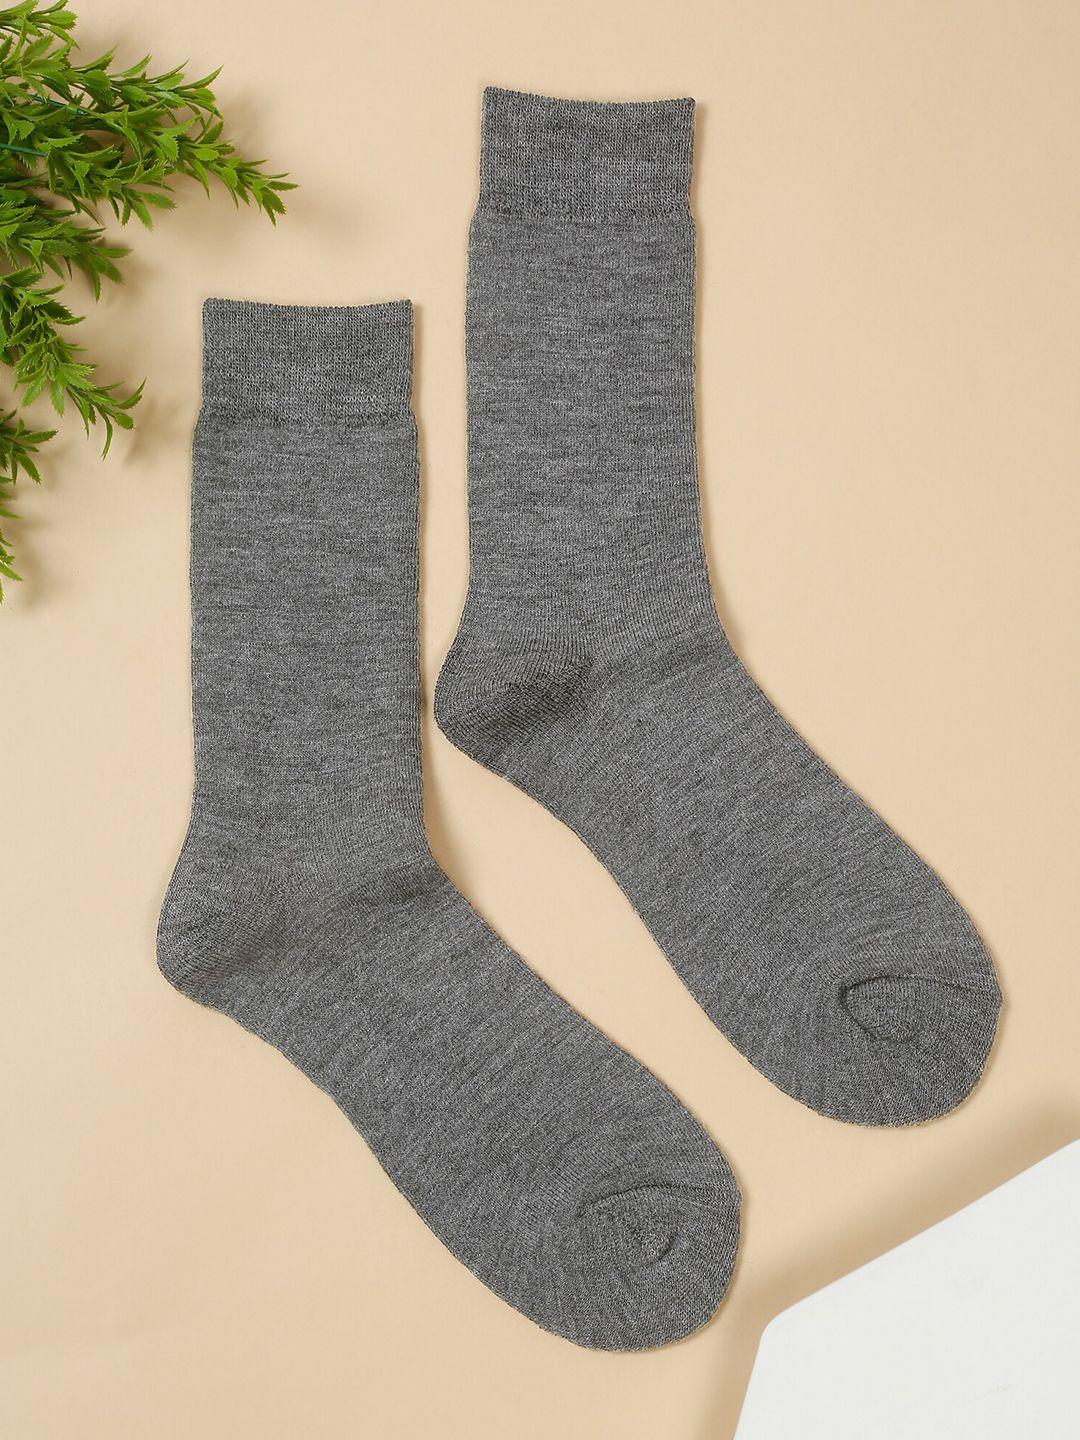 cantabil men pack of 3 acrylic calf-length socks